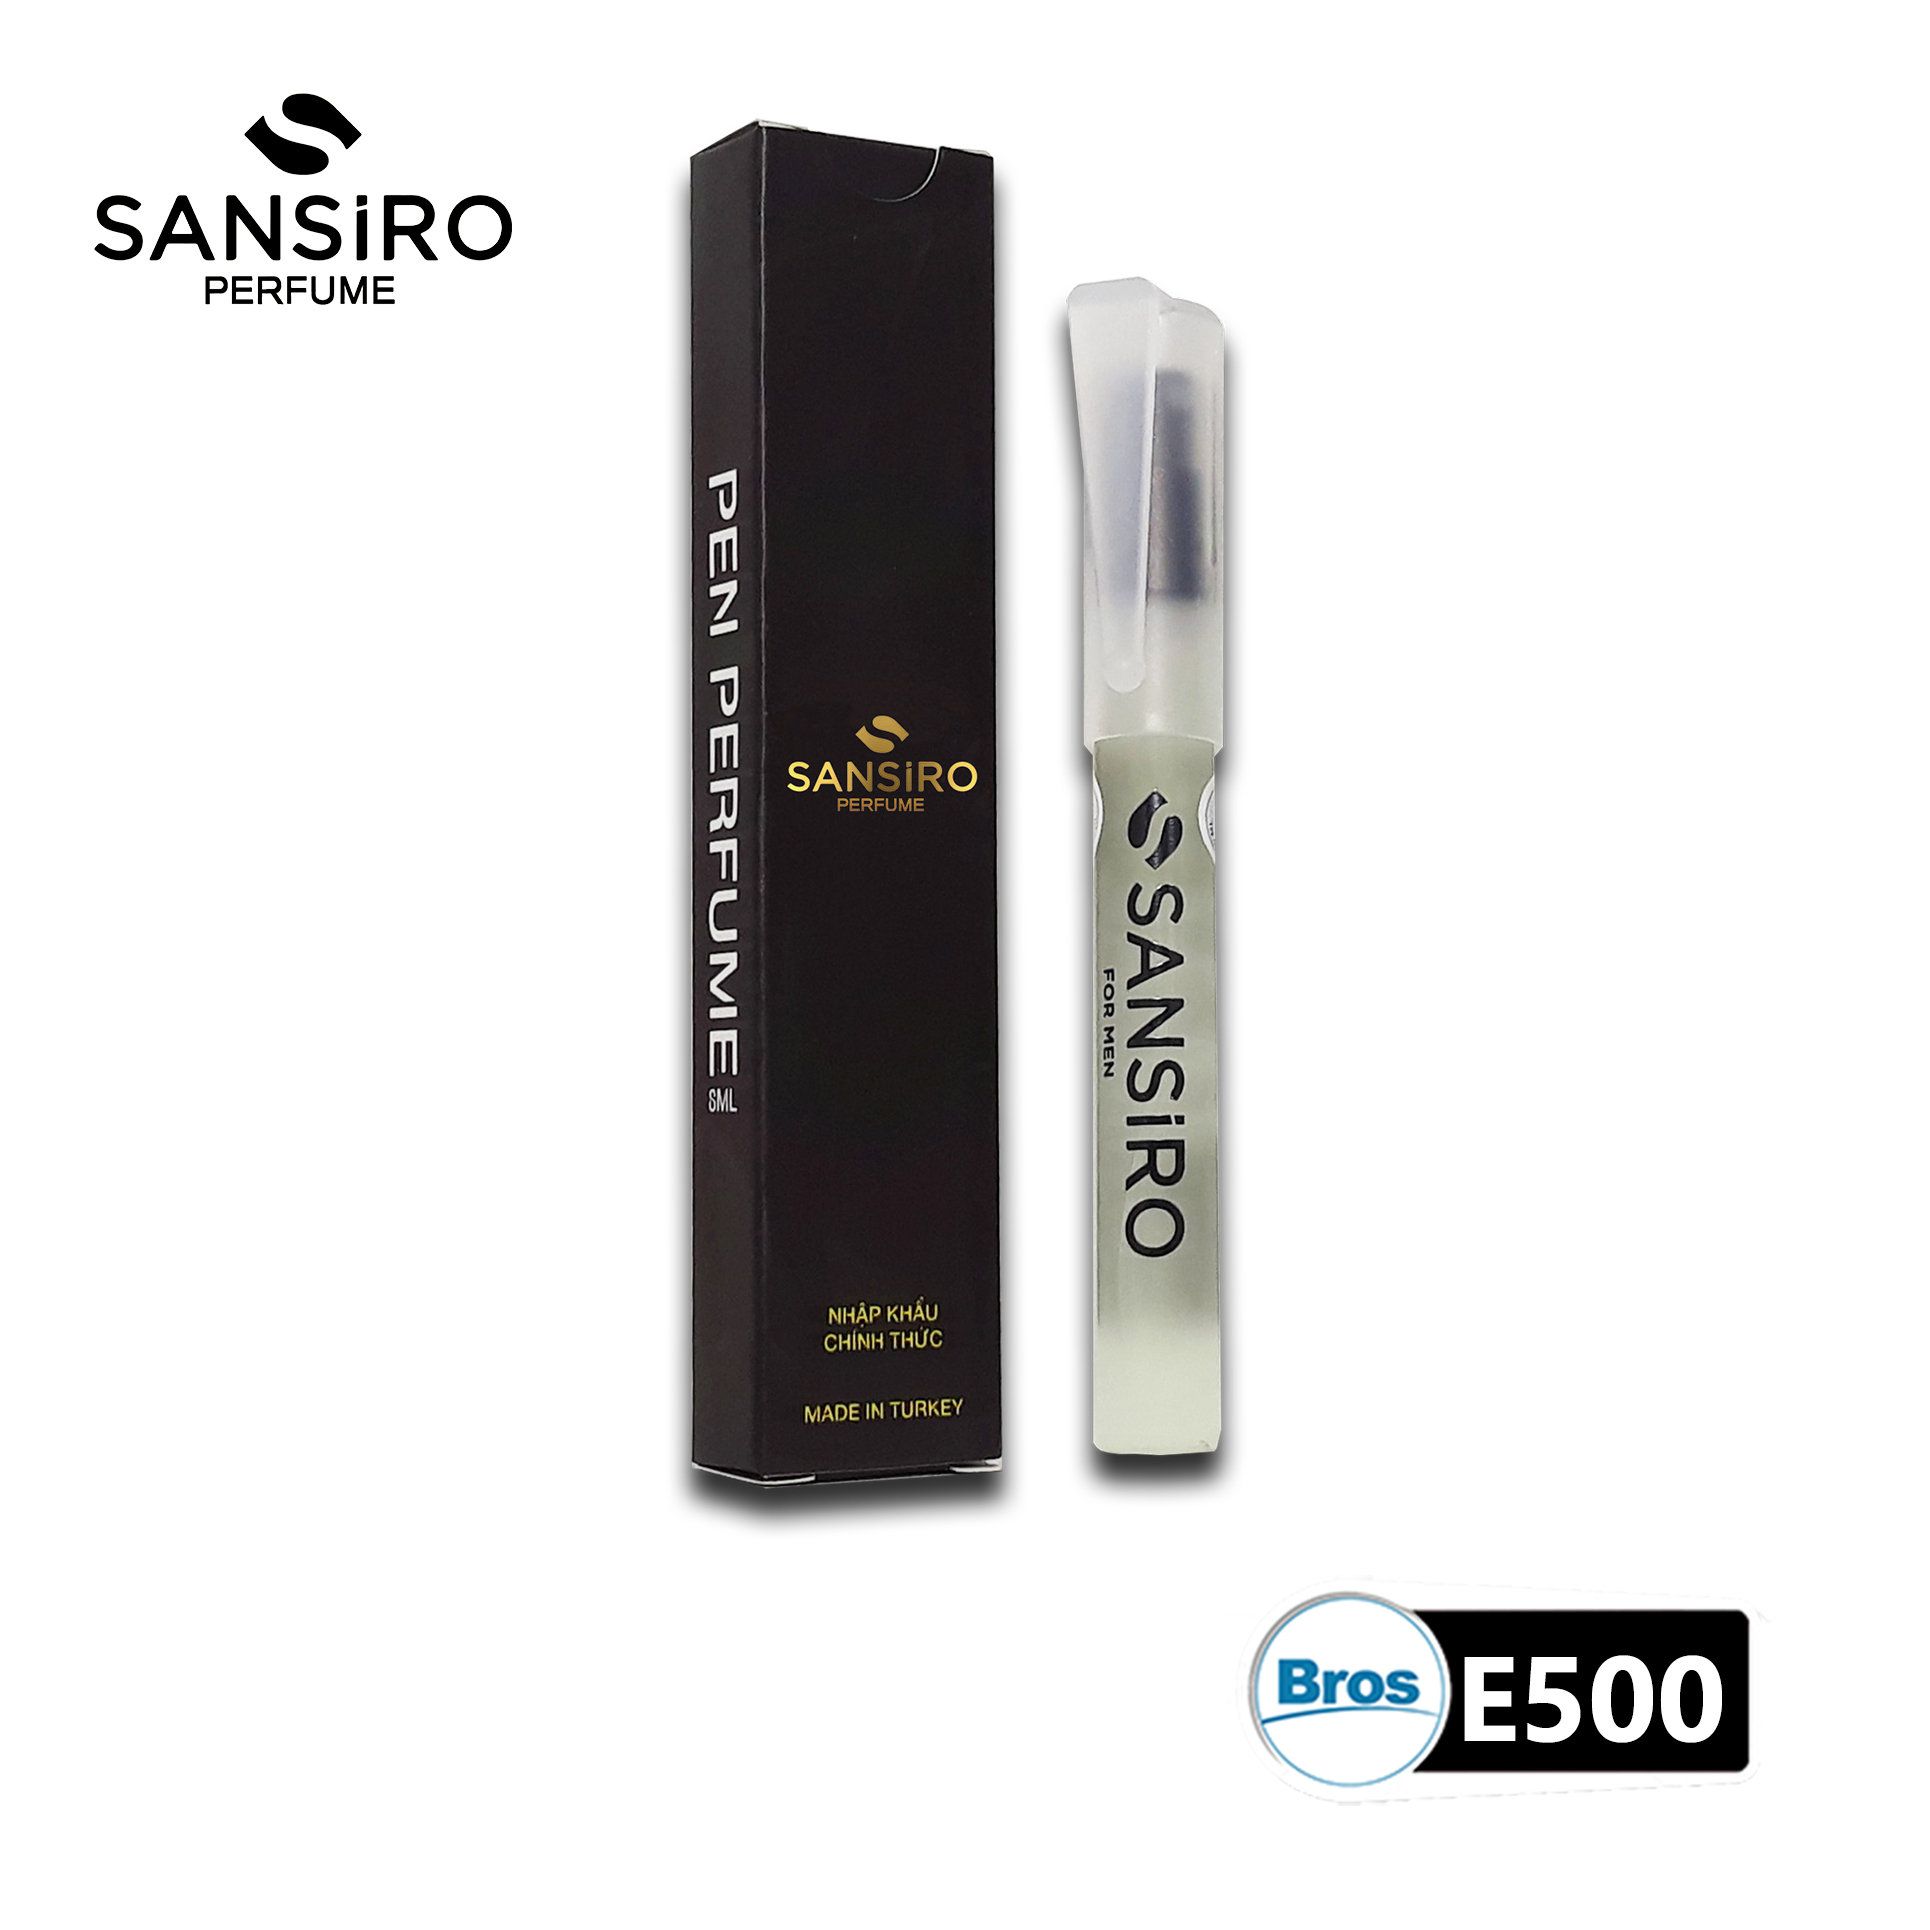 Nước hoa Sansiro 8ml cho nam - E500